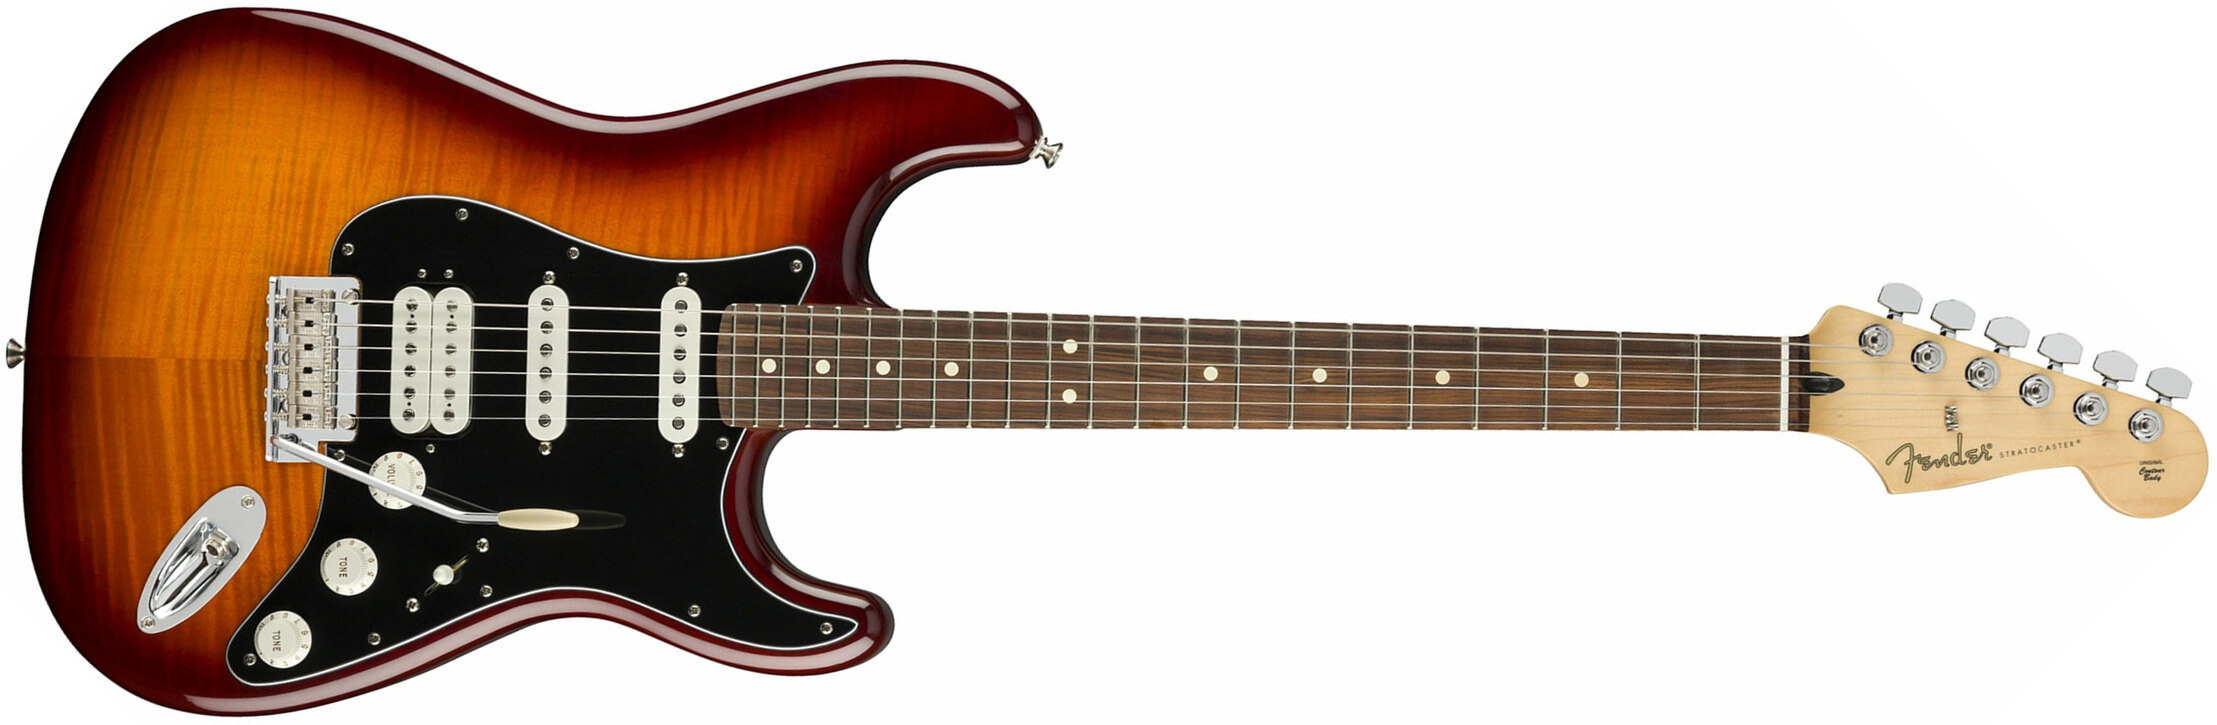 Fender Strat Player Plus Top Mex Hss Pf - Tobacco Burst - Guitare Électrique Forme Str - Main picture